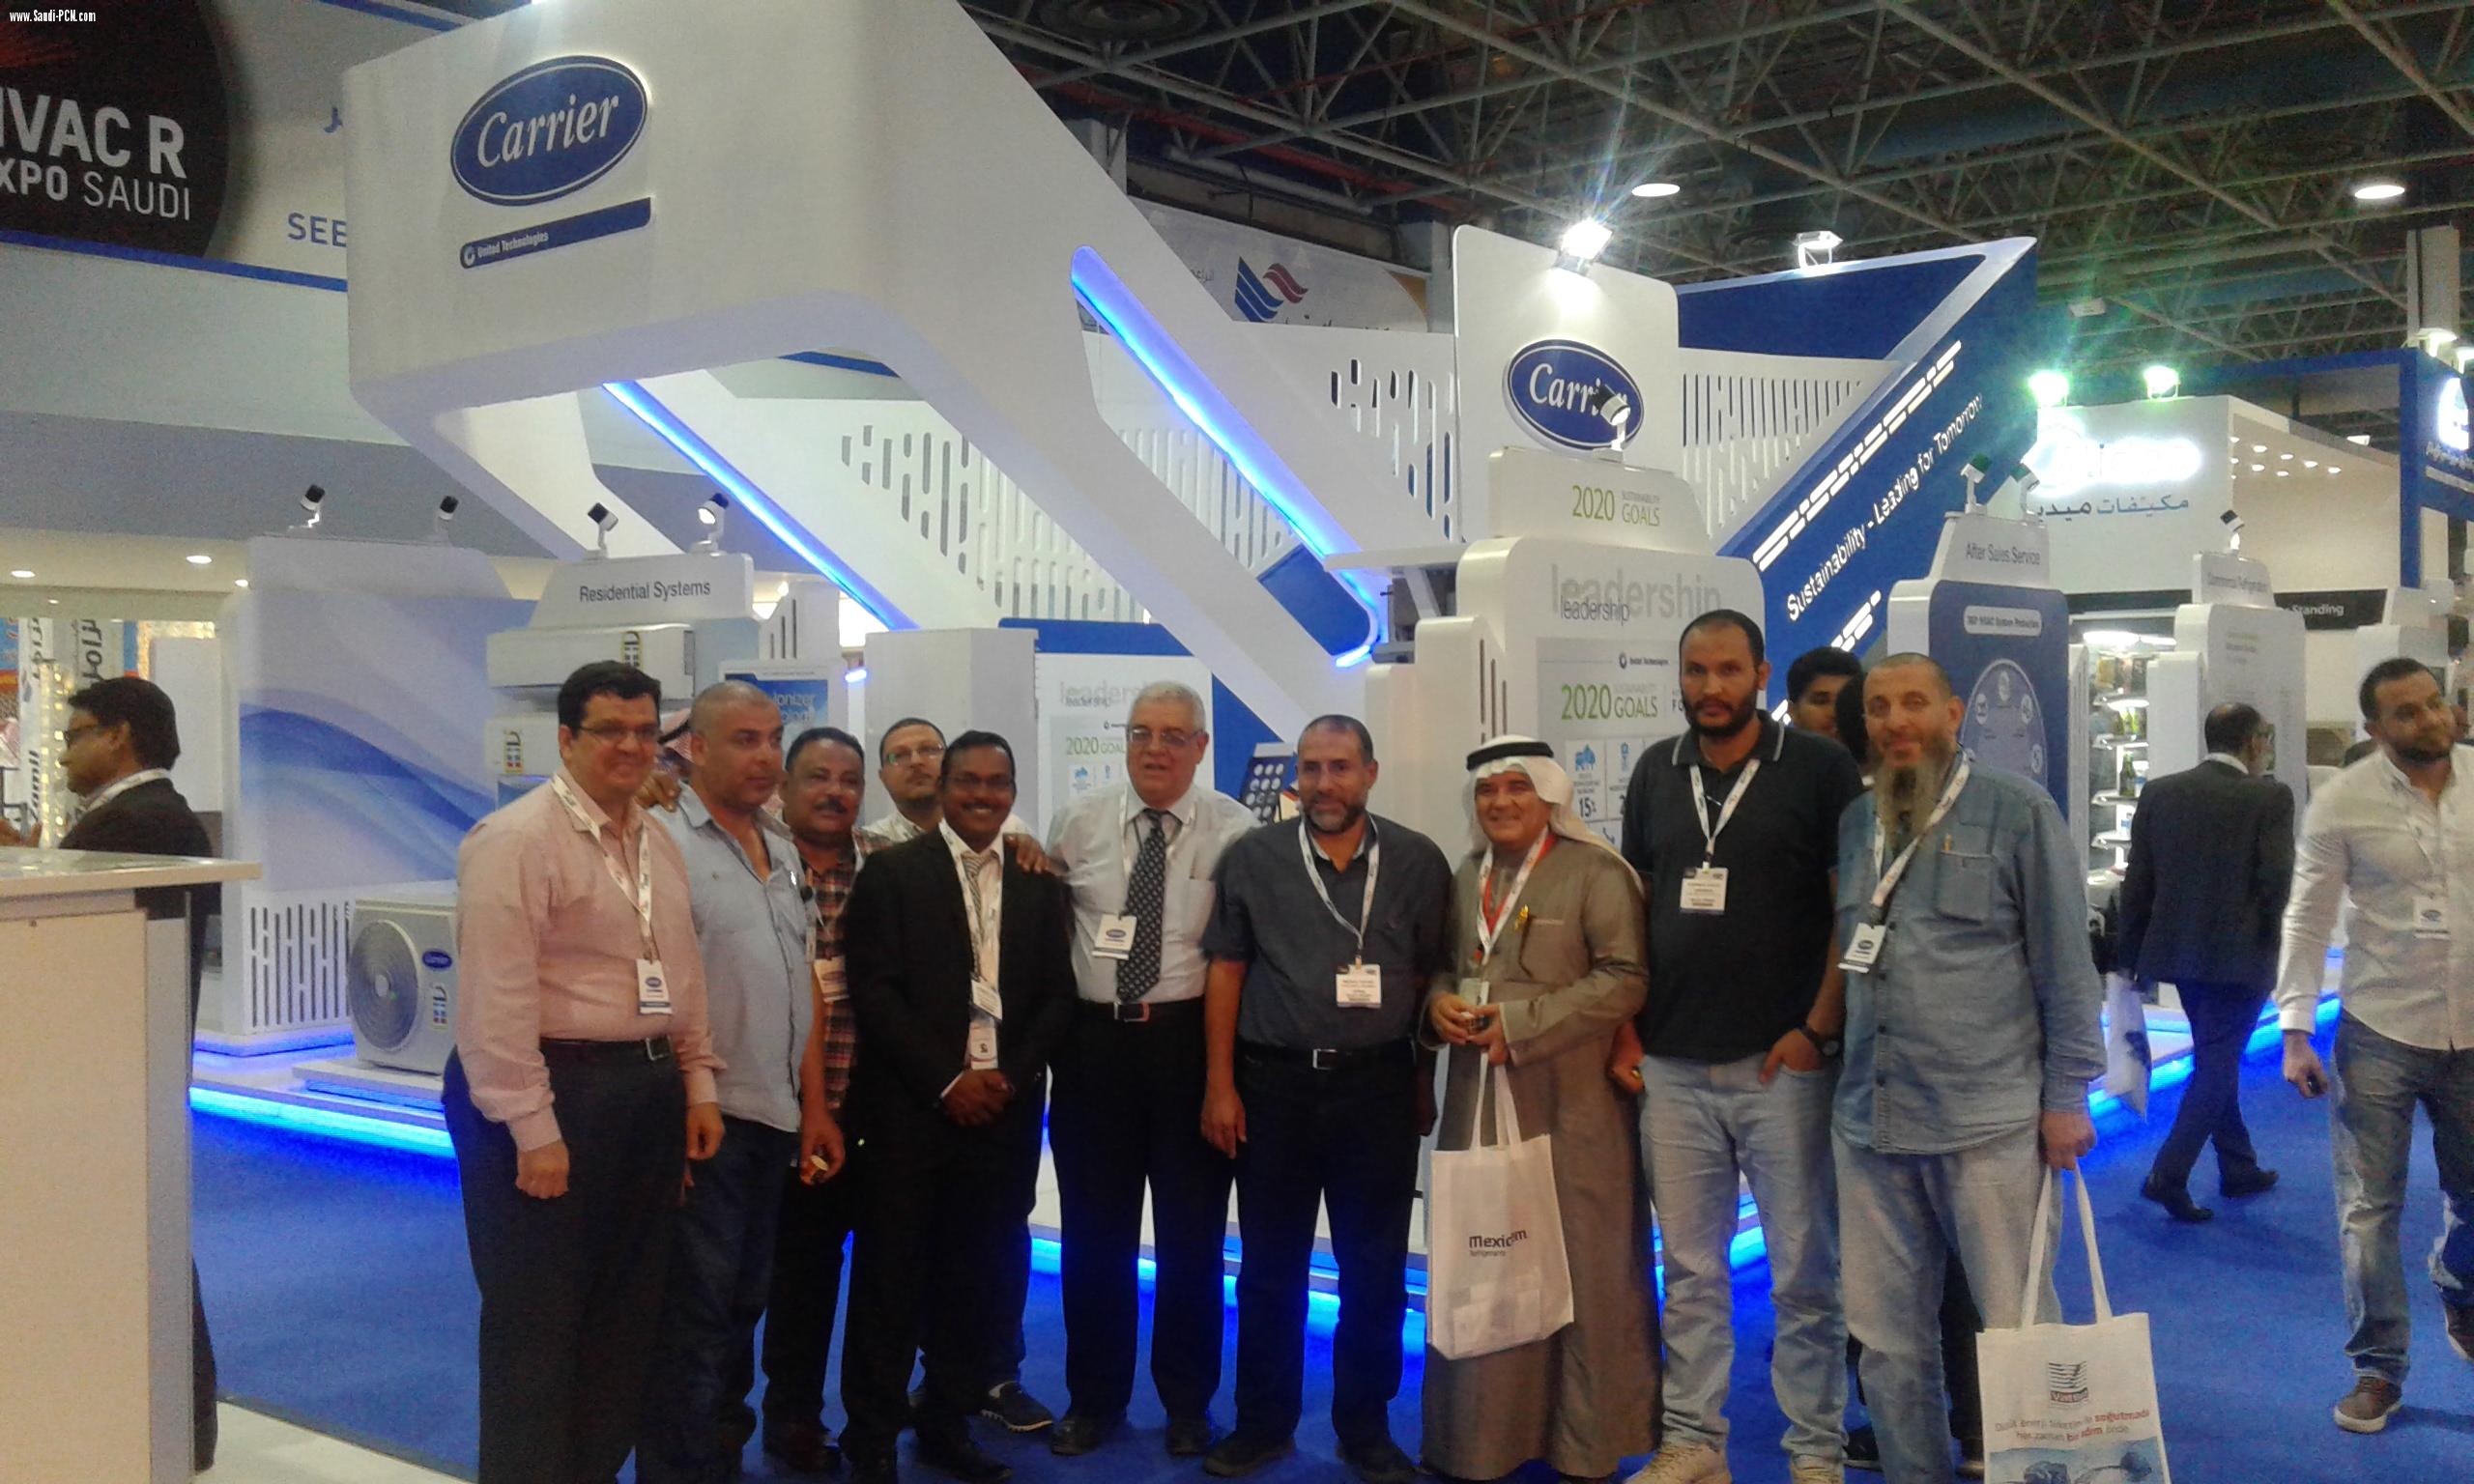 أكثر من عشرة الاف زائر للمعرض الدولي للتكييف “HVACR Expo Saudi”        وأجماع المختصين على جودة المضمون ودقة وروعة التنظيم